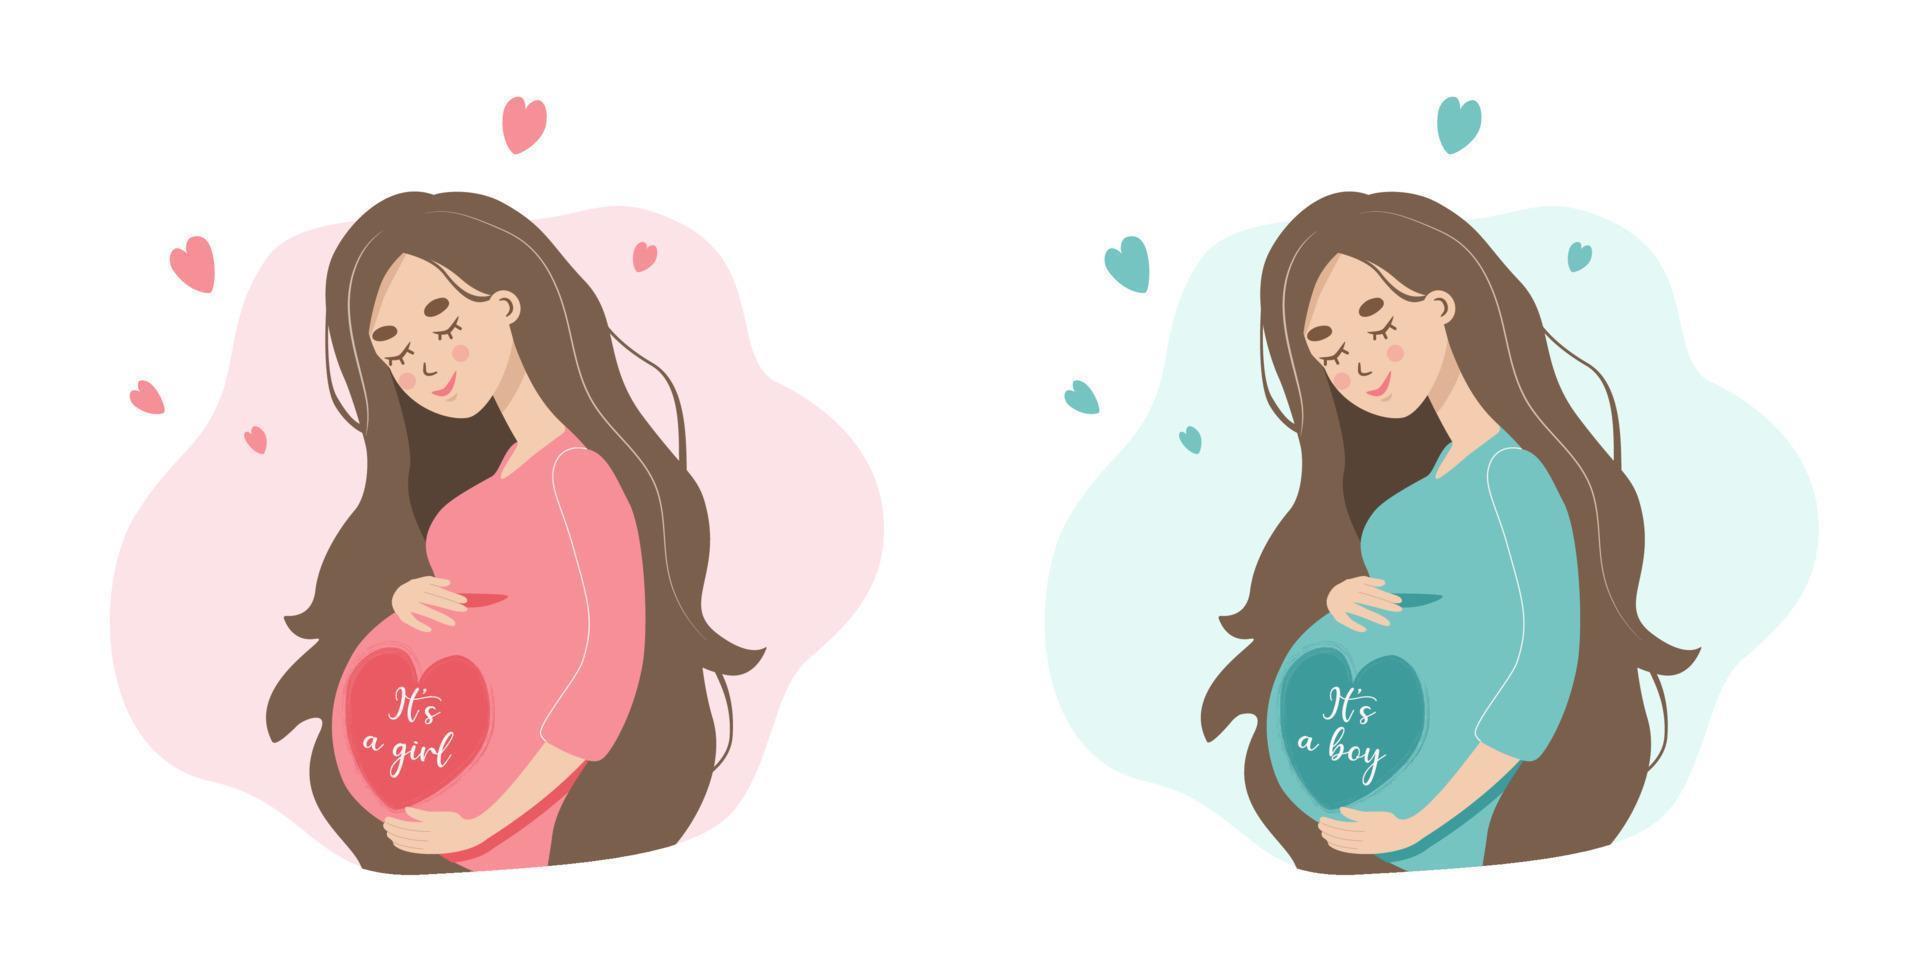 schwangere frau mit bauch erwartet ein baby, einen jungen oder ein mädchen. Geschlecht des Kindes. flache vektorillustration der jungen mutter in der schwangerschaft vektor